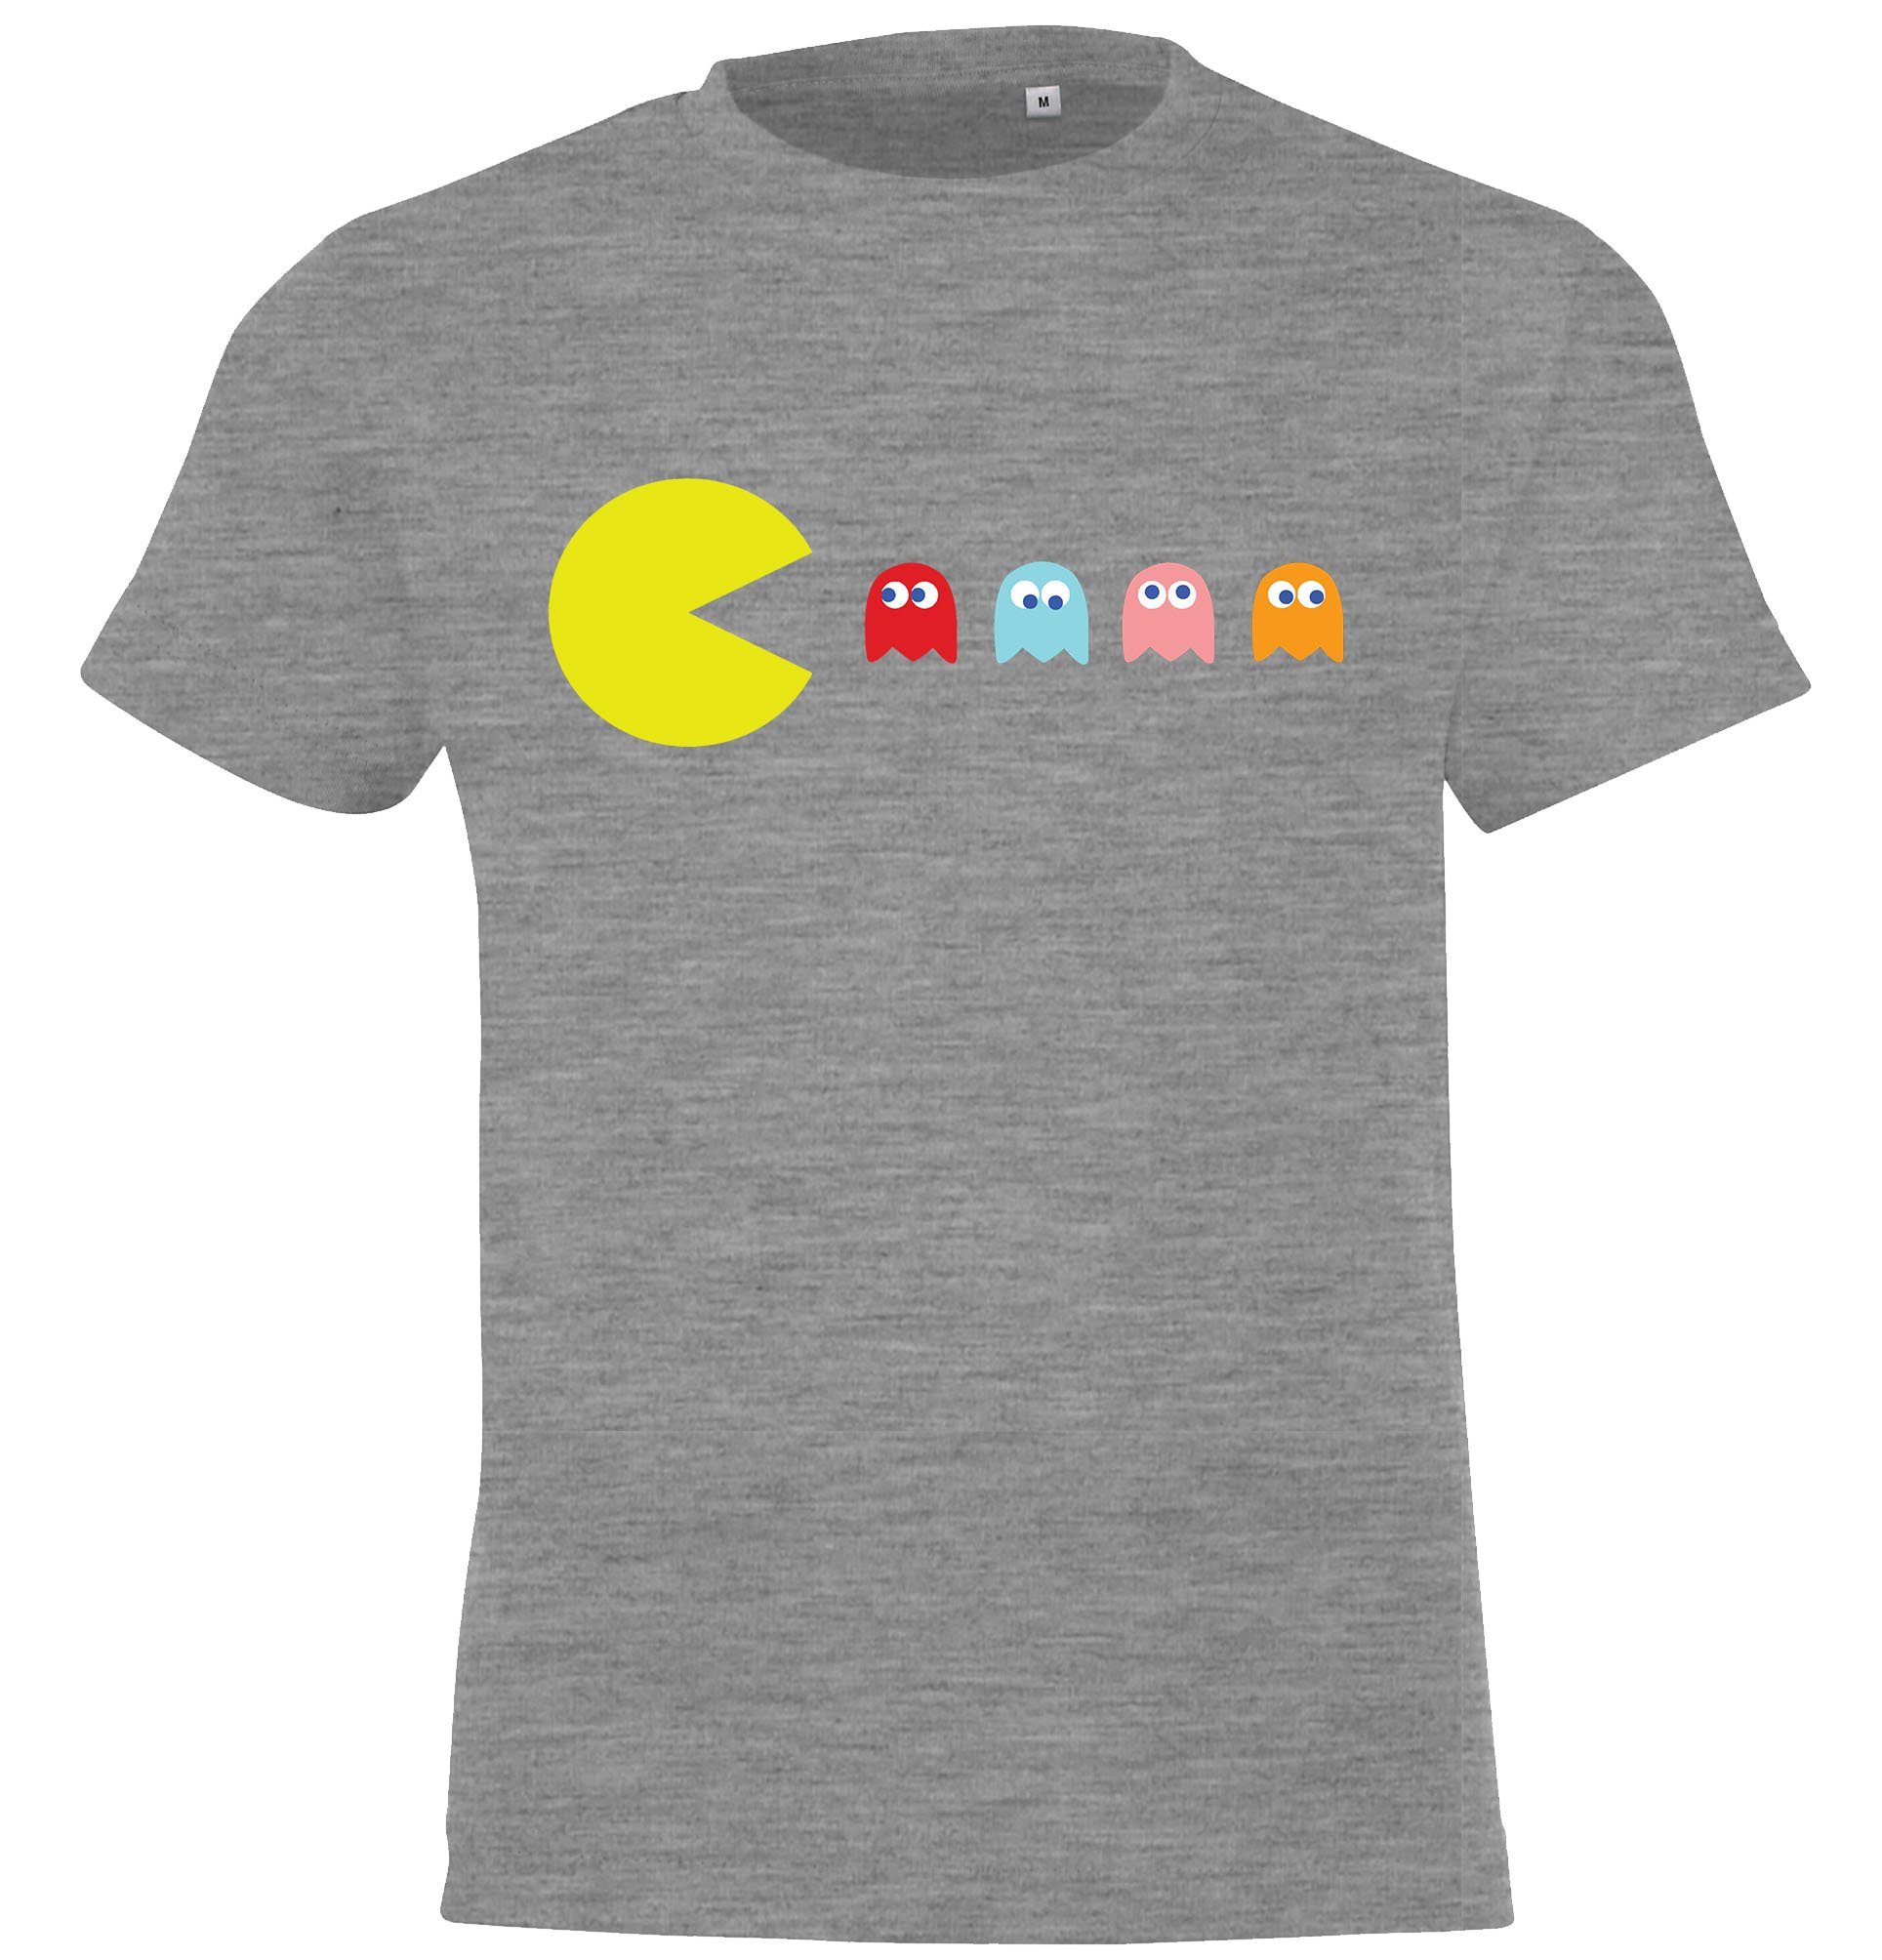 Youth Designz T-Shirt Vintage Gaming Kinder Shirt für Jungen und Mädchen mit trendigem Frontprint